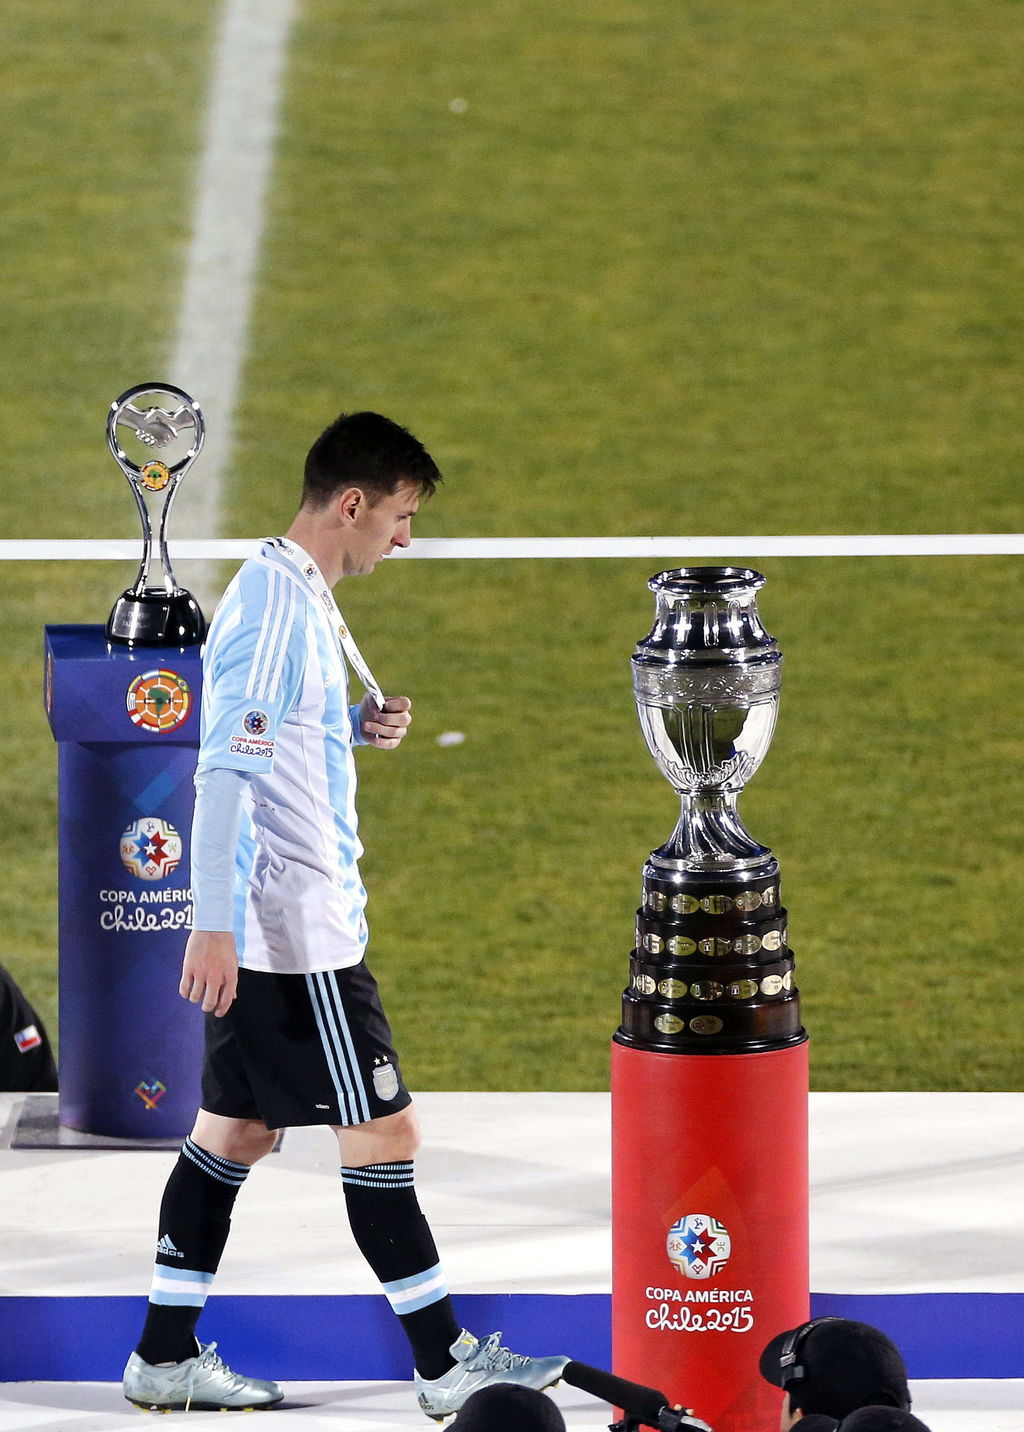 El seleccionado argentino fue superado por penaltis por Chile, tras empatar sin goles en el tiempo reglamentario, en la final de la Copa América disputada el pasado 4 de julio. (EFE)